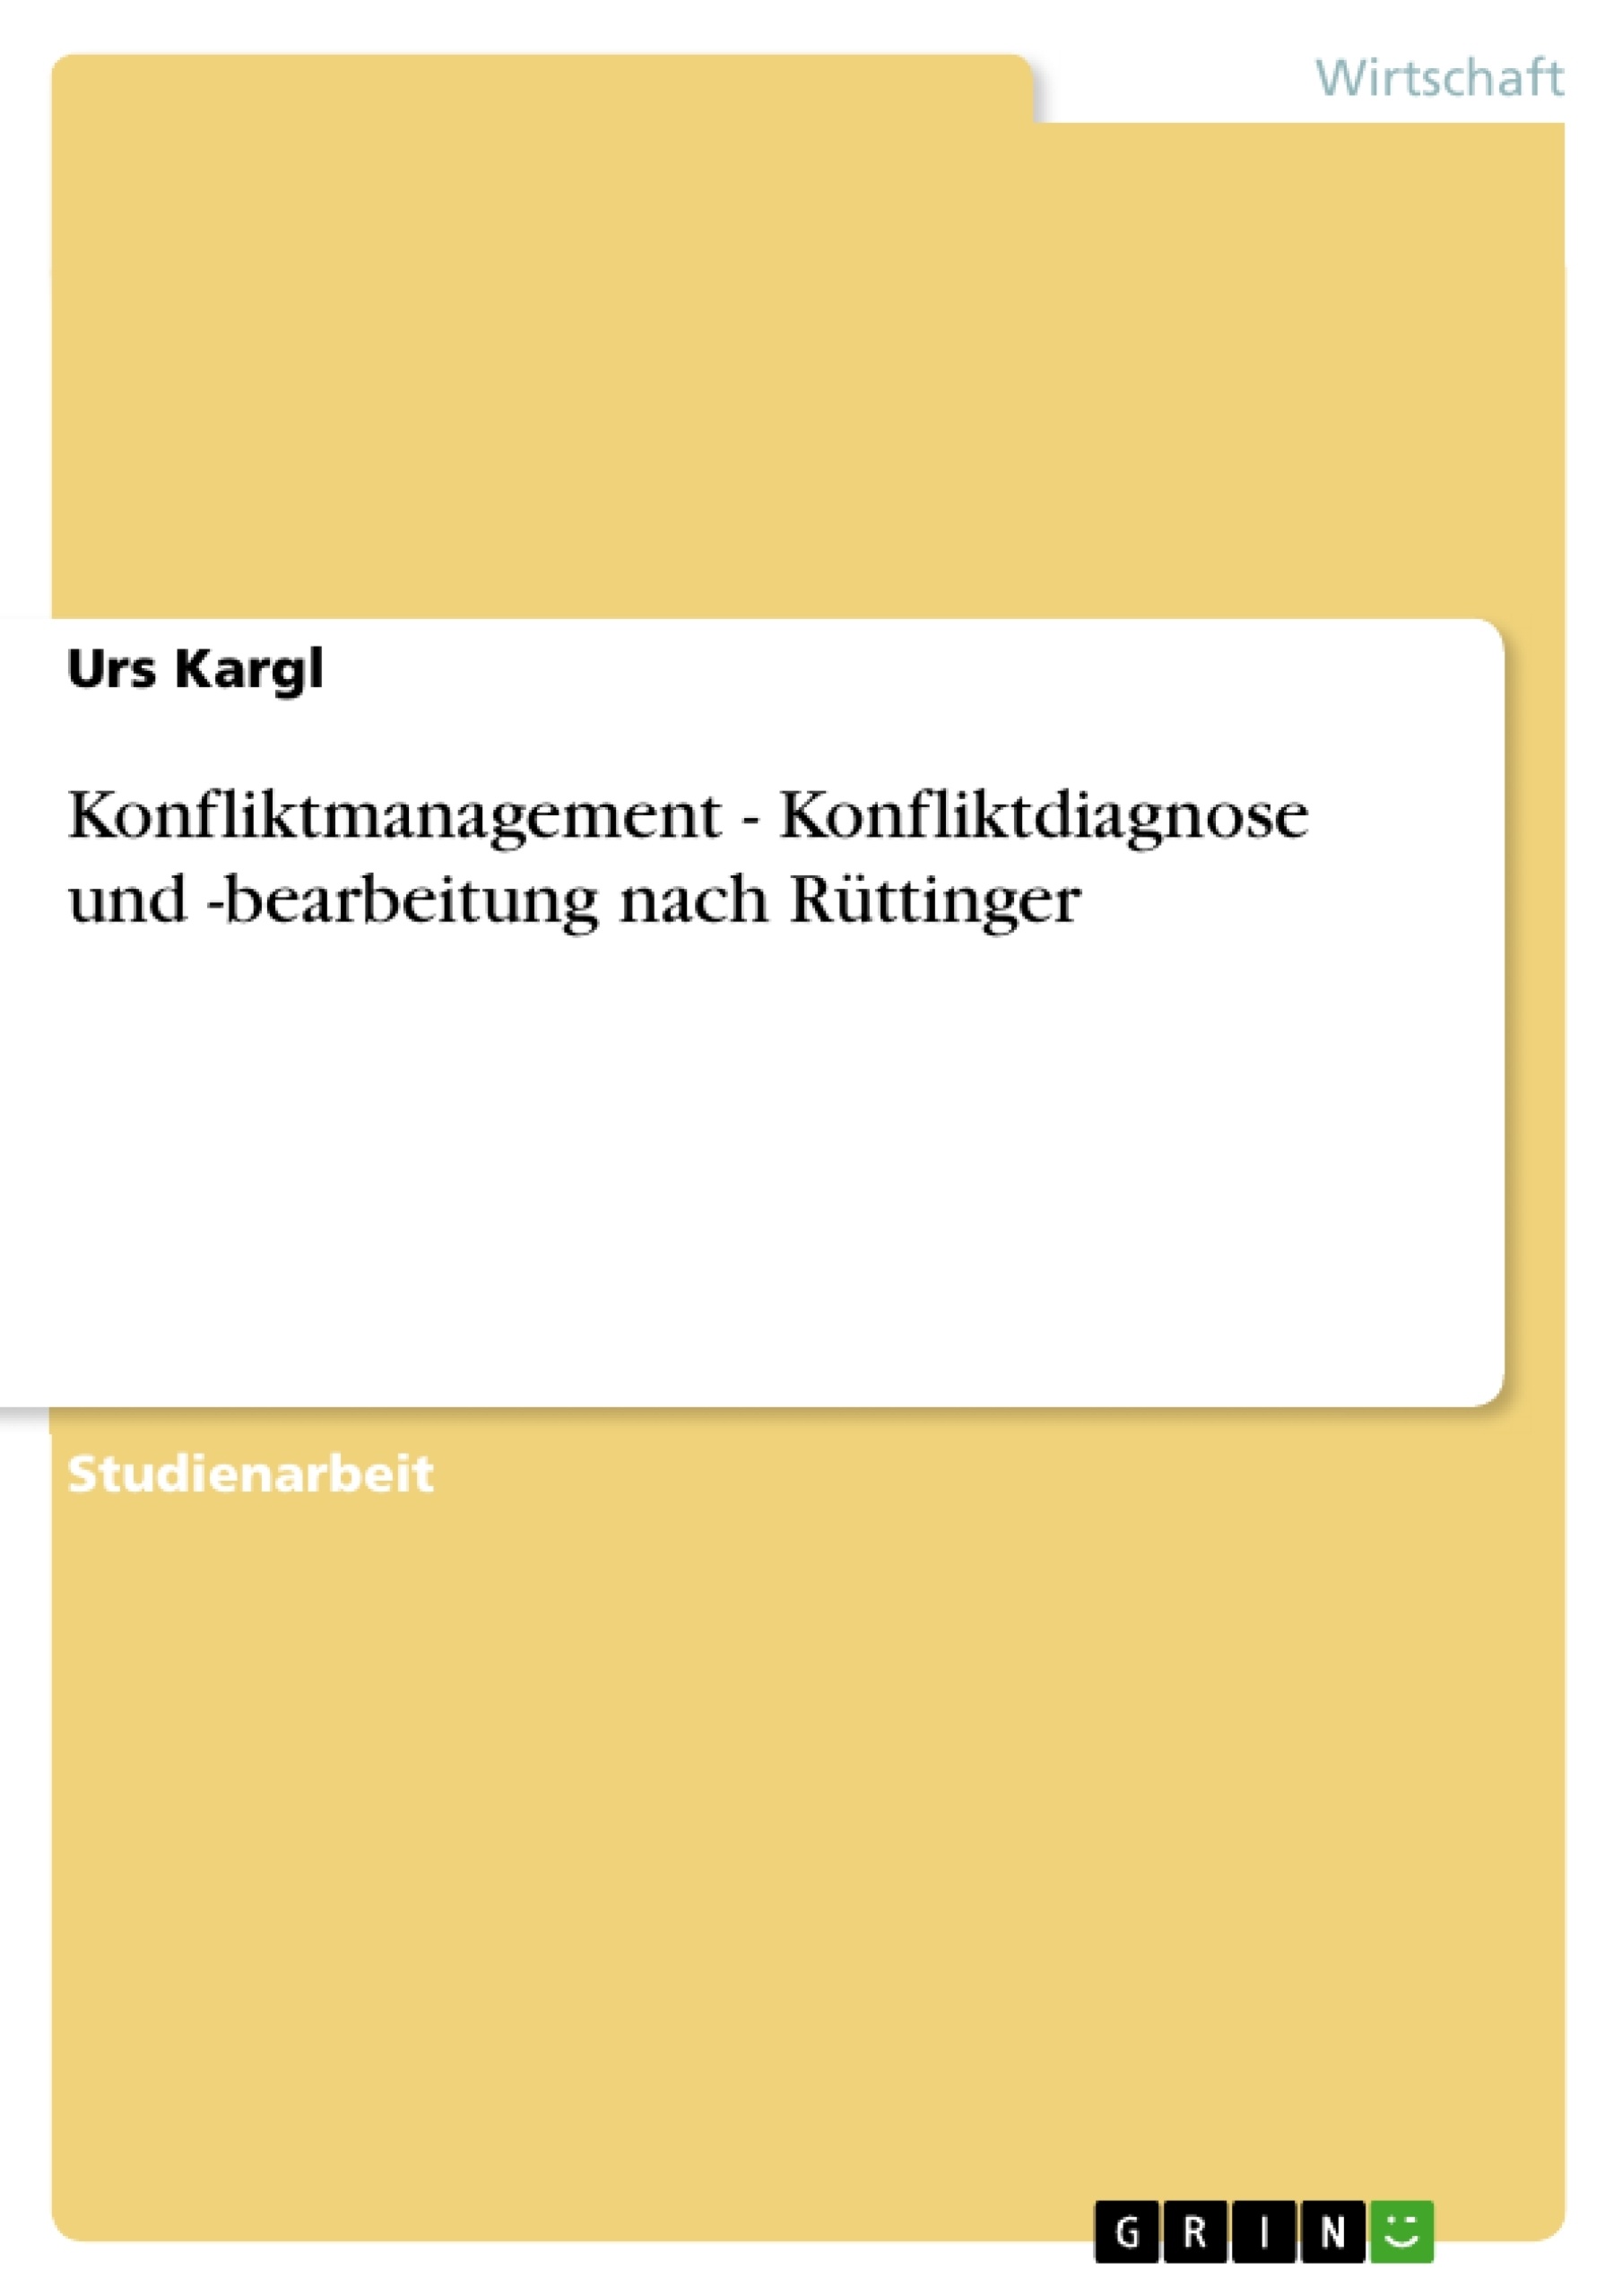 Título: Konfliktmanagement - Konfliktdiagnose und -bearbeitung nach Rüttinger